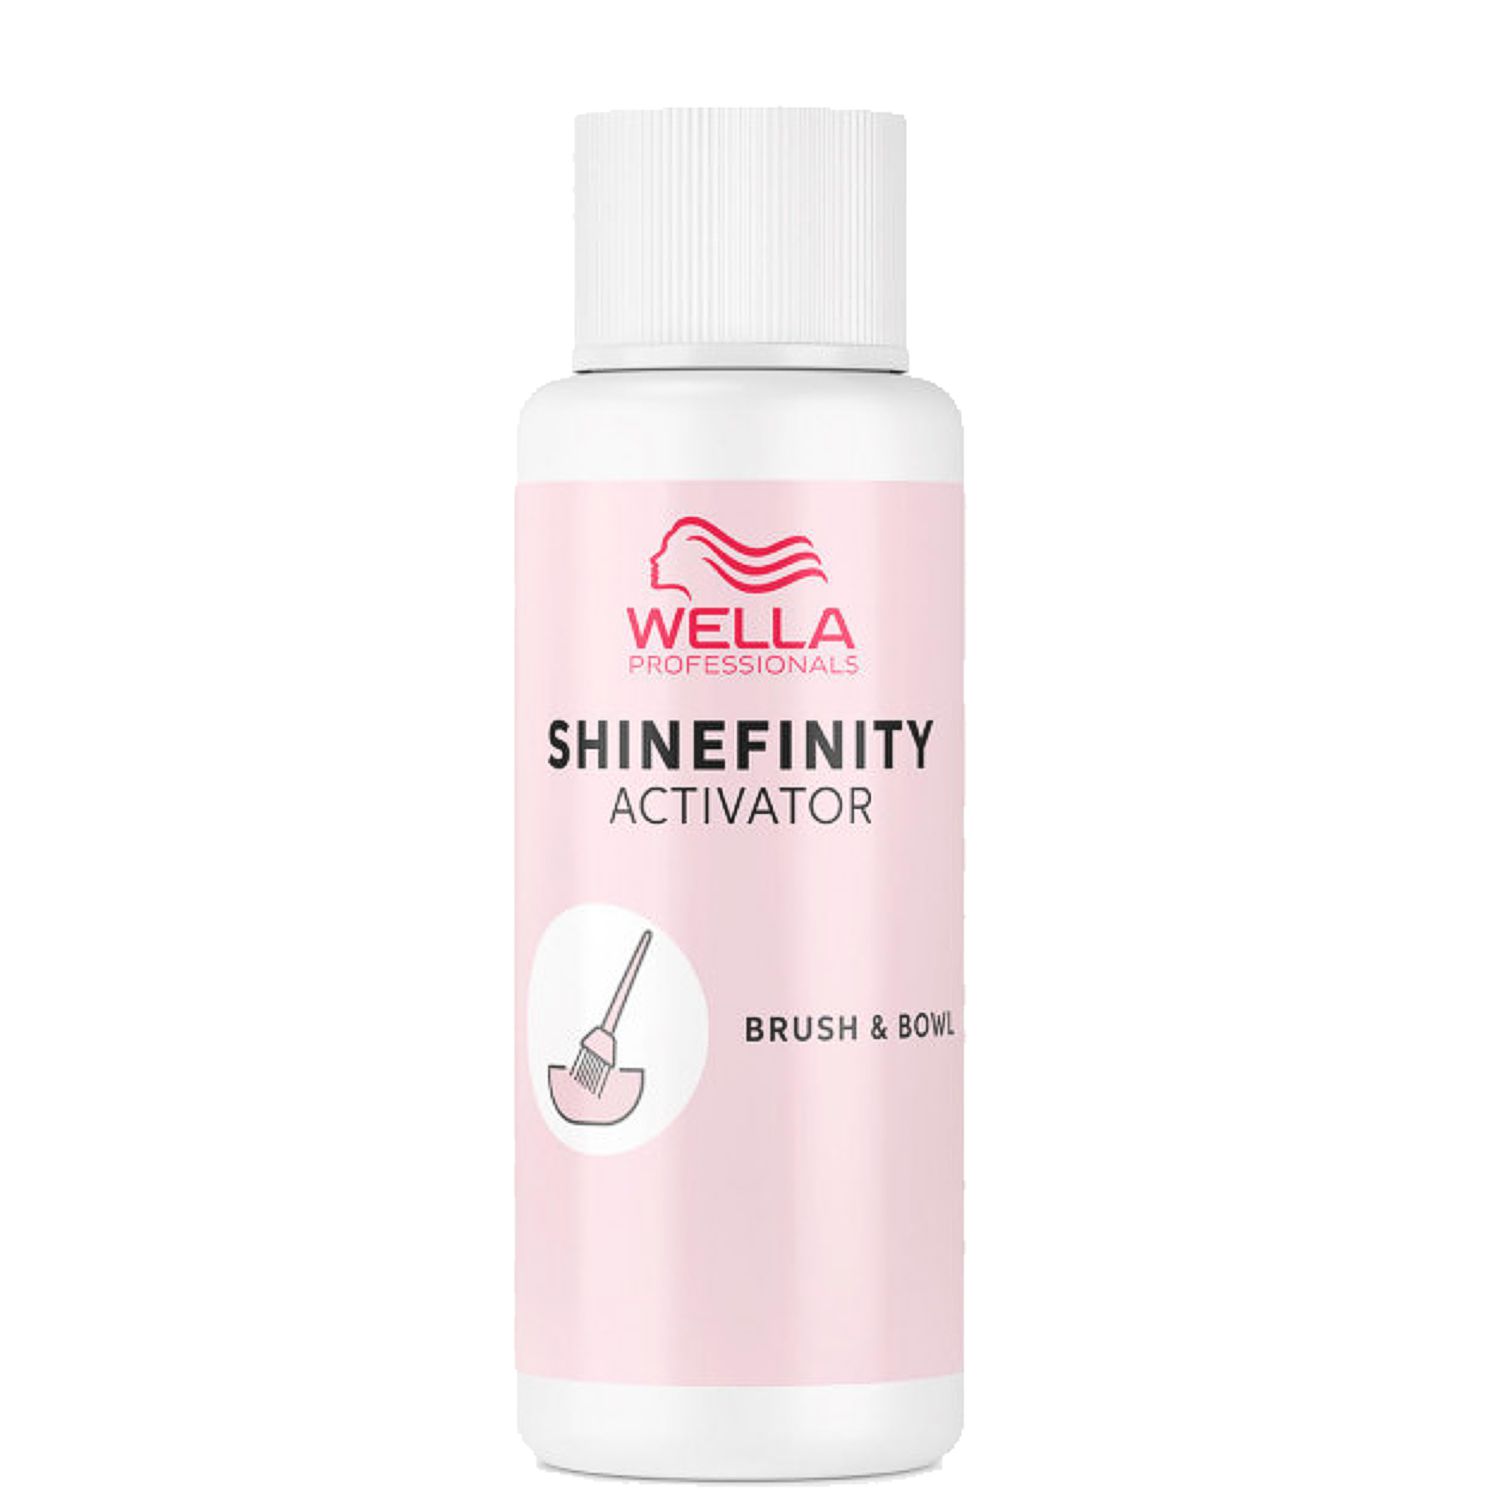 WELLA Shinefinity Activator Brush & Bowl 2% 60 ml